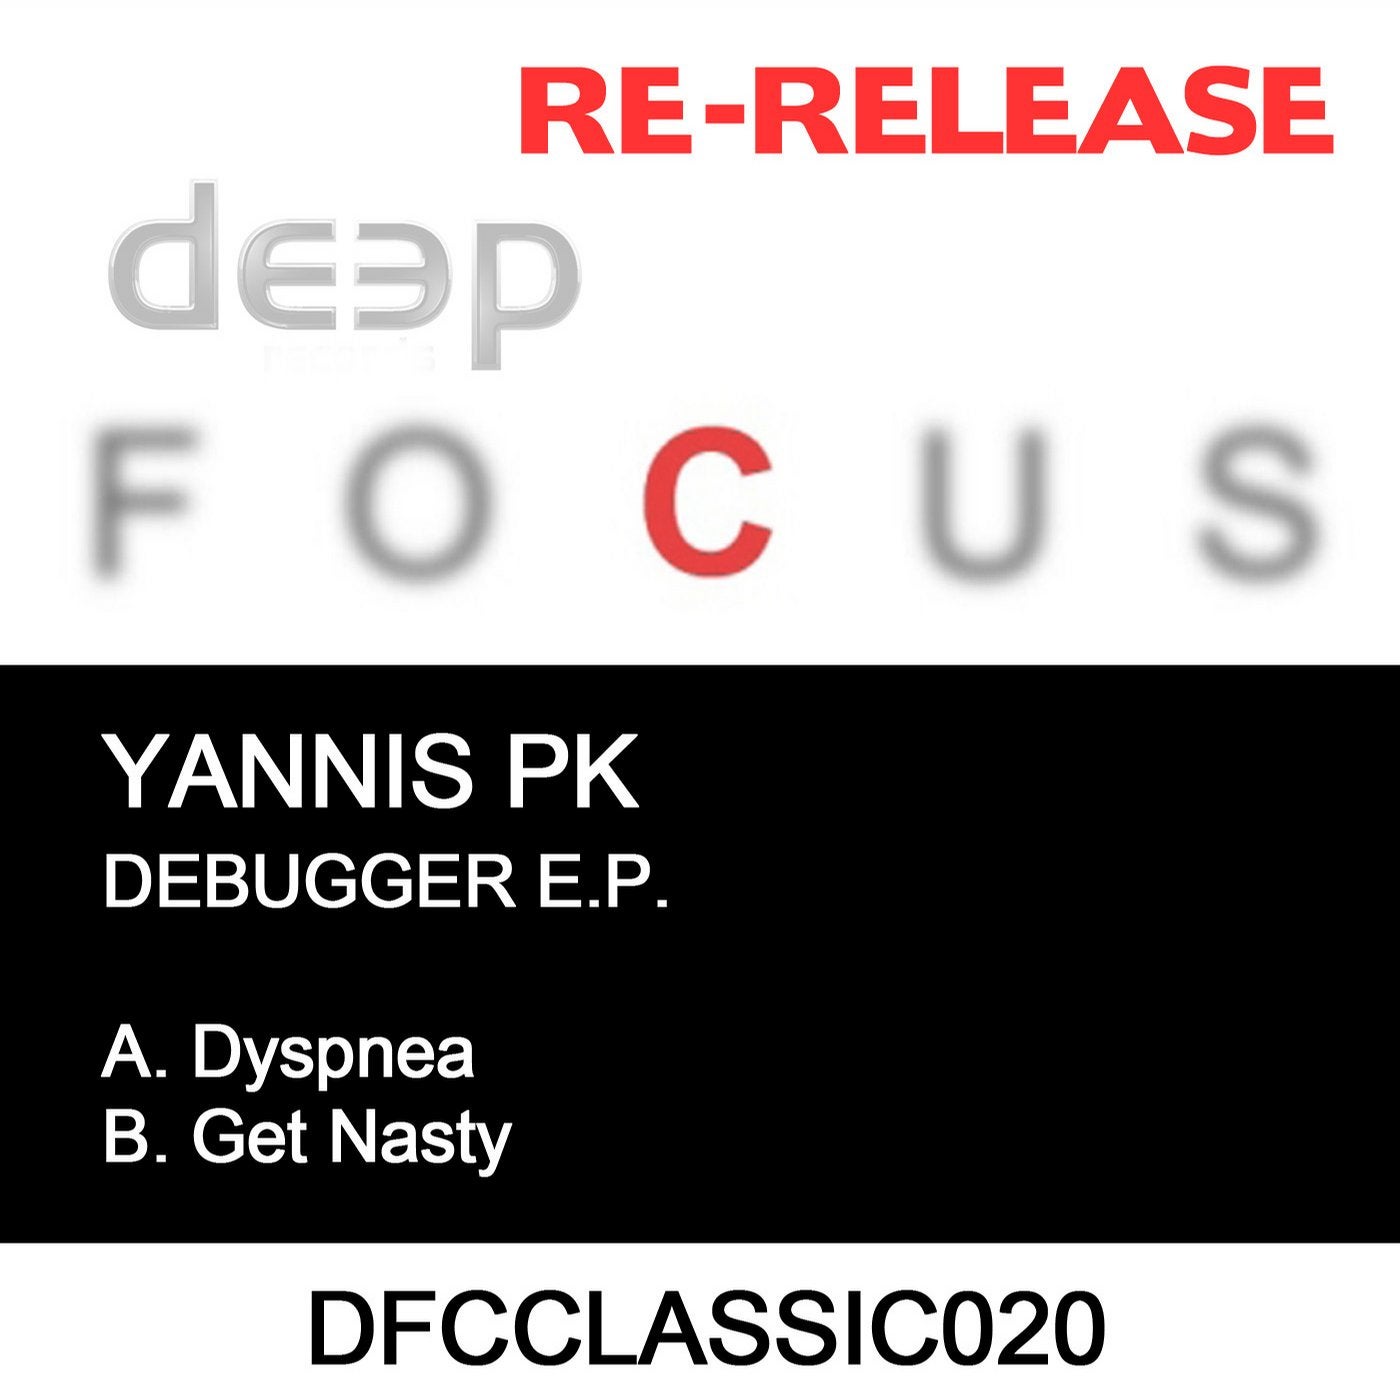 Debugger EP